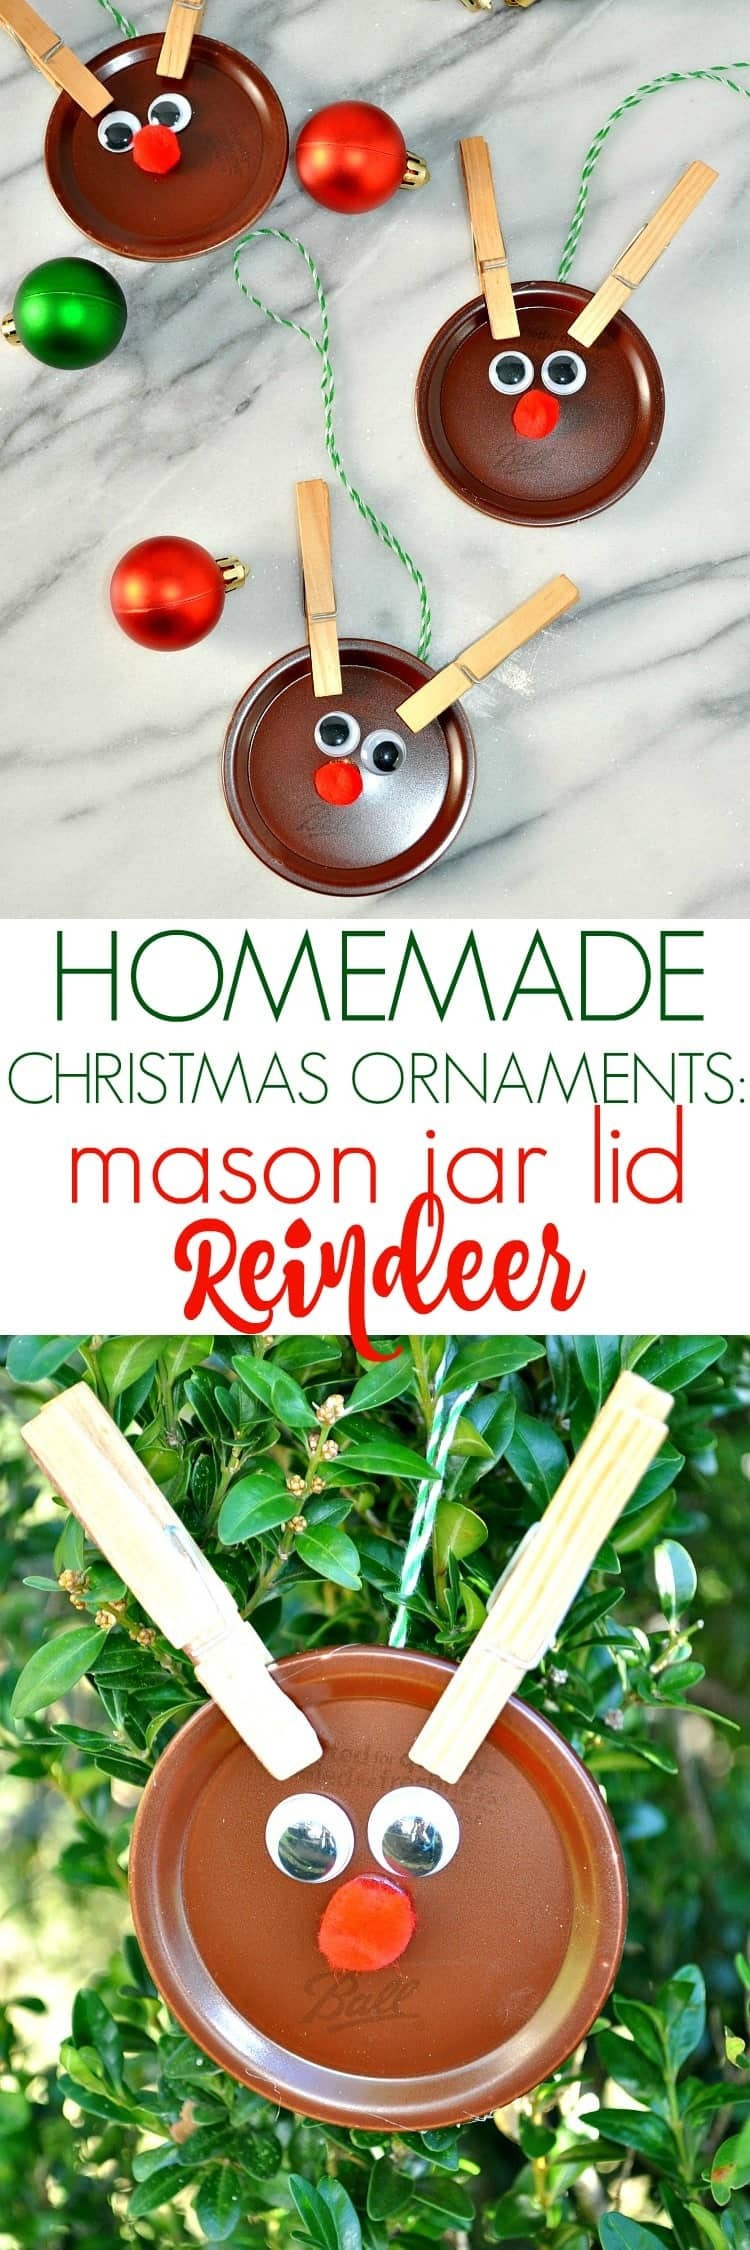 Easy Christmas Craft Gift
 Homemade Christmas Ornaments Mason Jar Lid Reindeer The